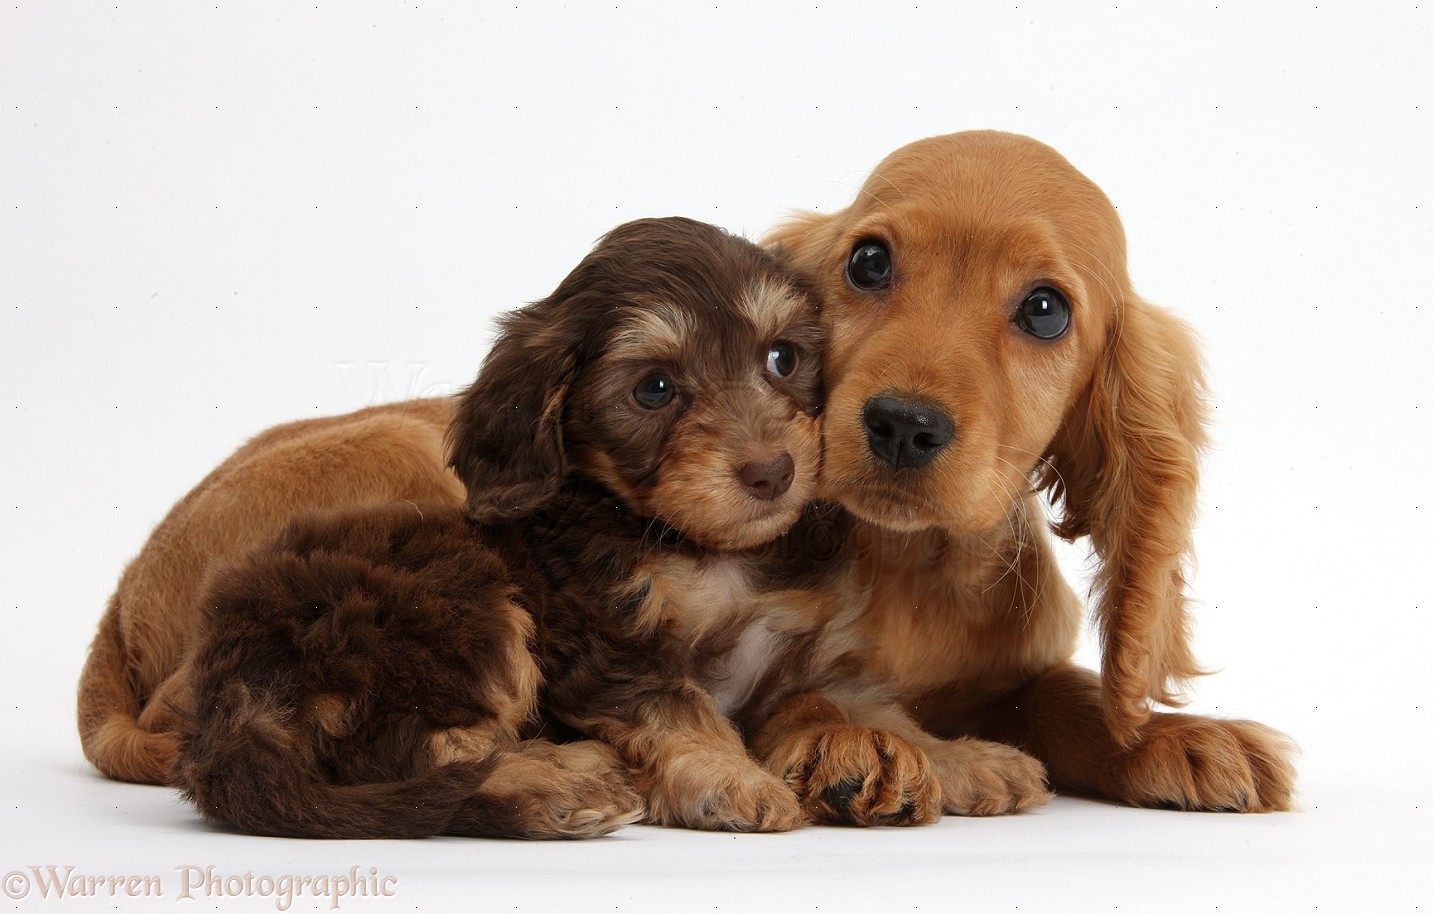 Cute American Cocker Spaniel Puppies: Cute Cute Daxiedoodle And Golden Cocker Spaniel Puppies Breed